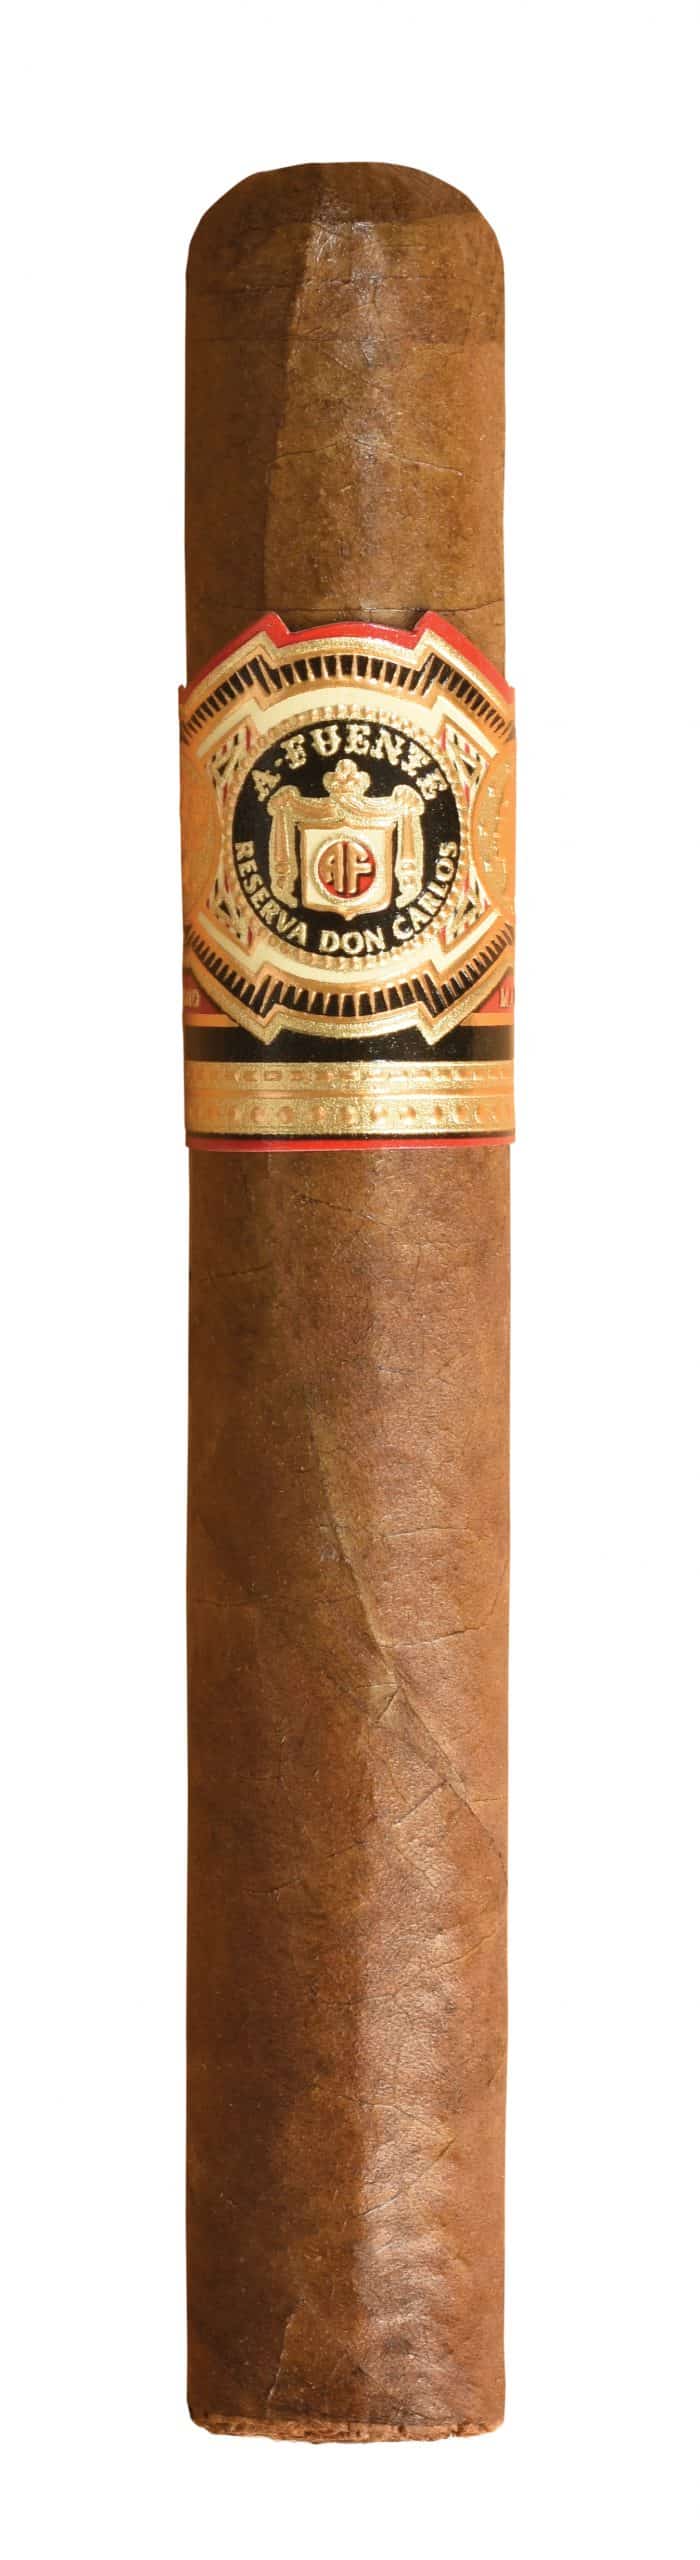 single arturo fuente don carlos double robusto cigar